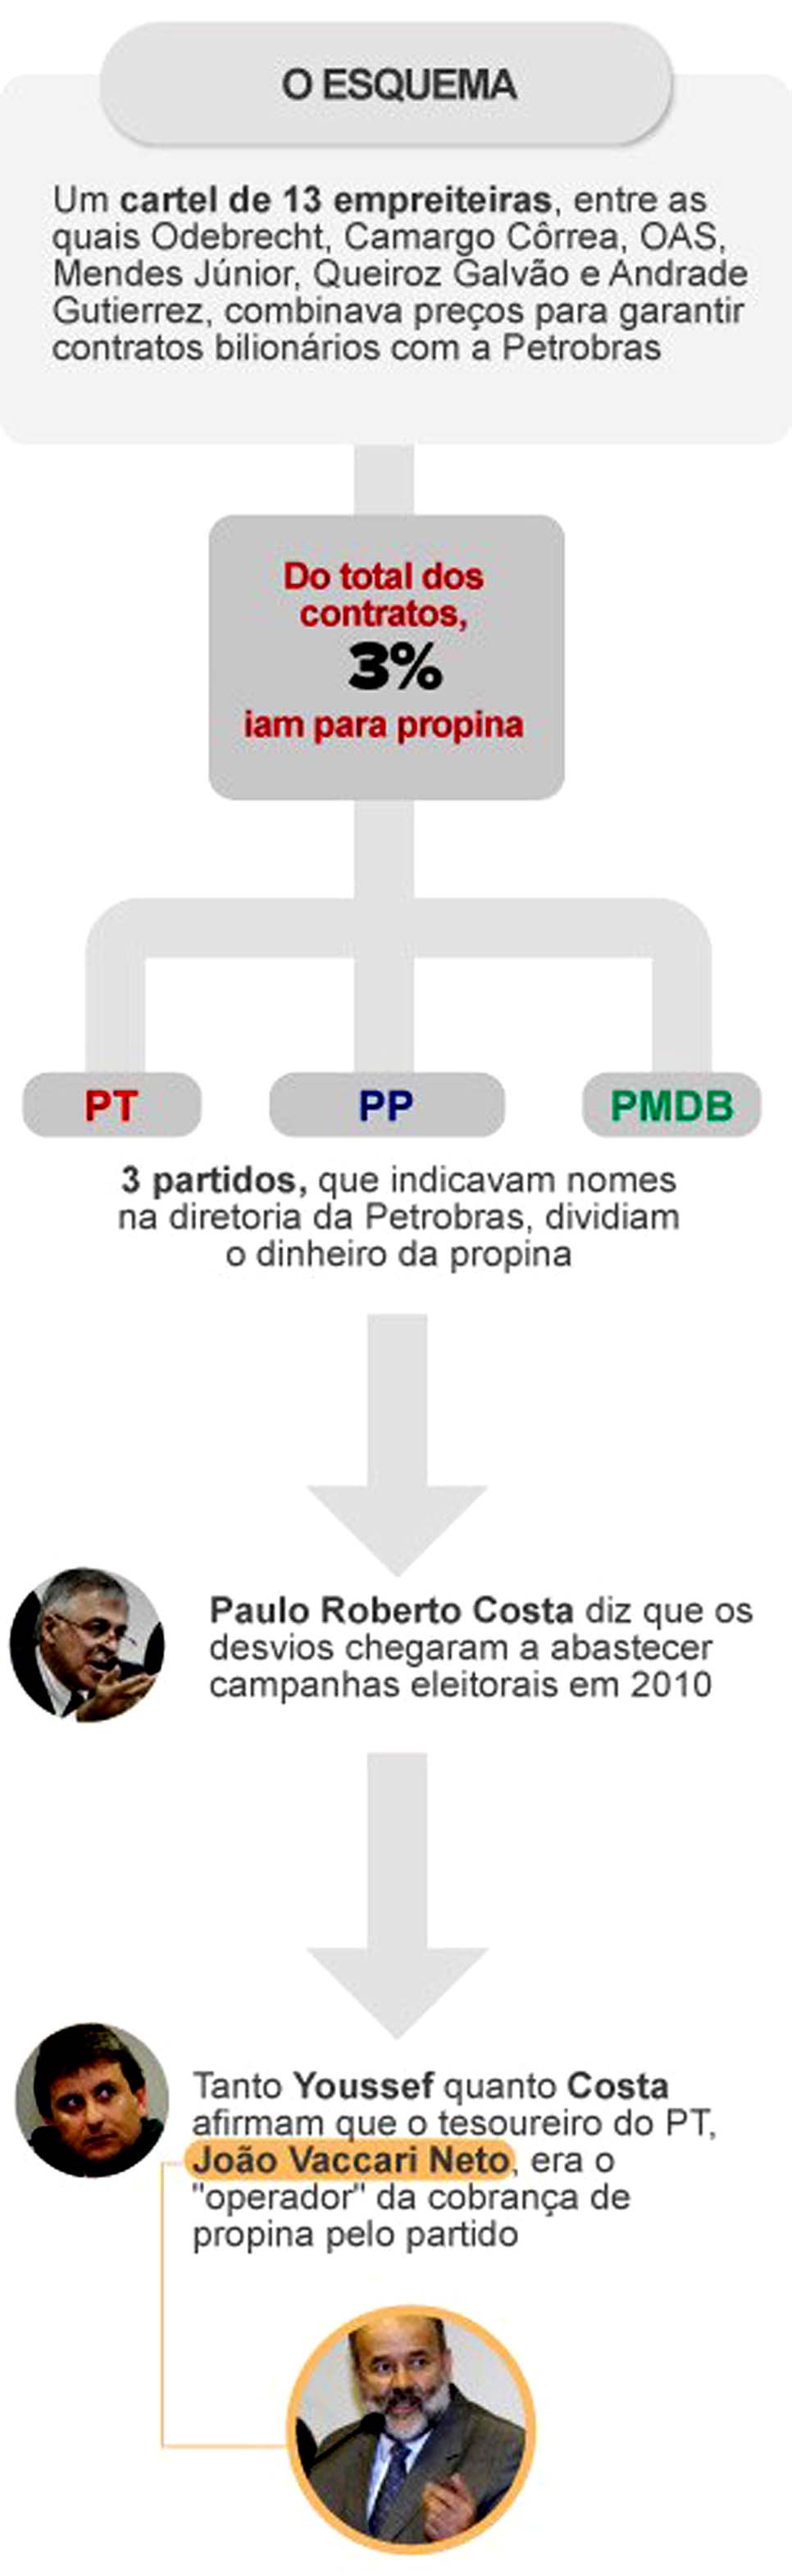 O Globo - G1.com.br - Petrobras: SEC/EUA investiga prejuízo aos acionistas - 17/10/14